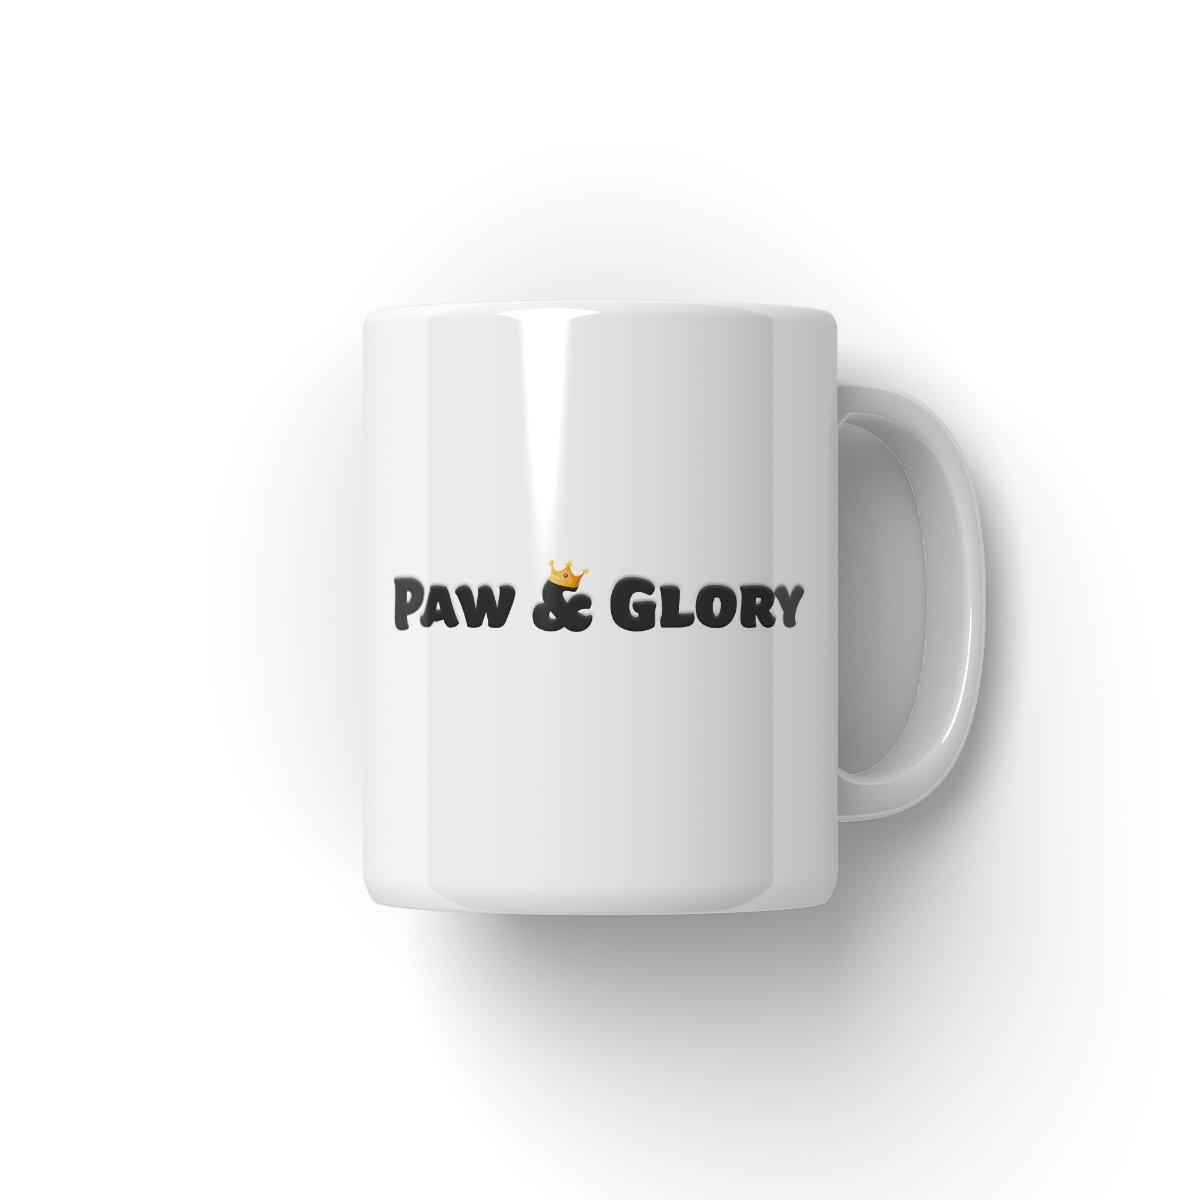 South Africa Rugby Team: Paw & Glory, pawandglory, personalized puppy mug, custom dog mug, personalised mugs dog, mugs with dog and owner, custom cat mug, coffee mug with dogs, Pet Portrait Mug